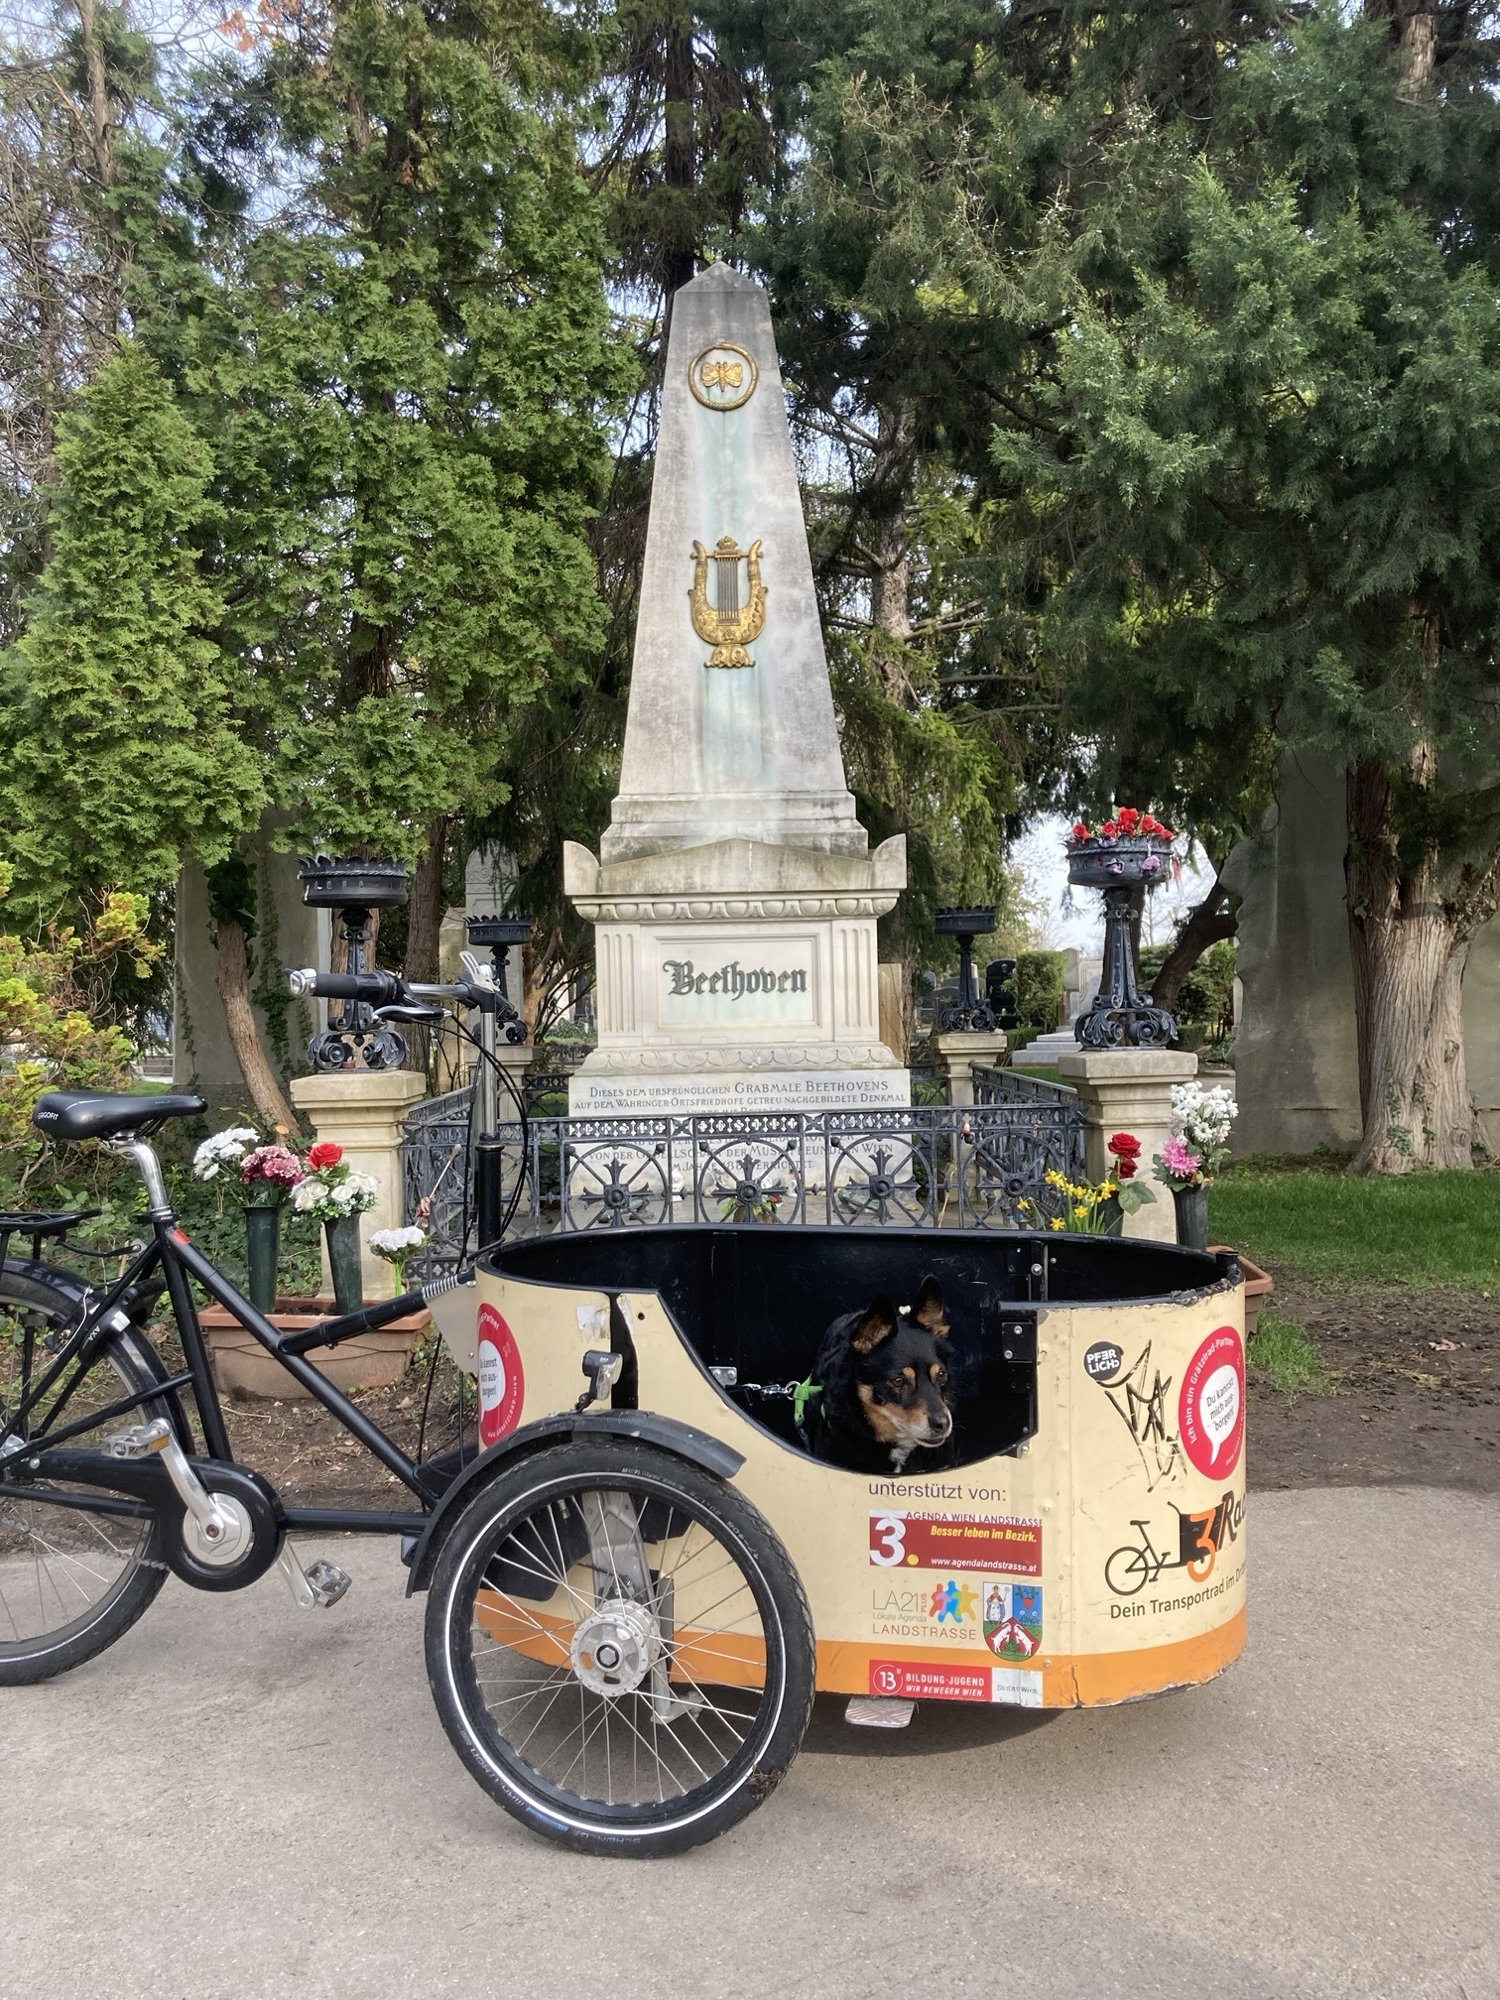 Lastenrad mit Hund im Korb vor dem Grab von Beethoven, der oben spitz zulaufende Stein ist dekoriert mit einer goldenen Harfe und einem Kreis mit einem Schmetterling darin